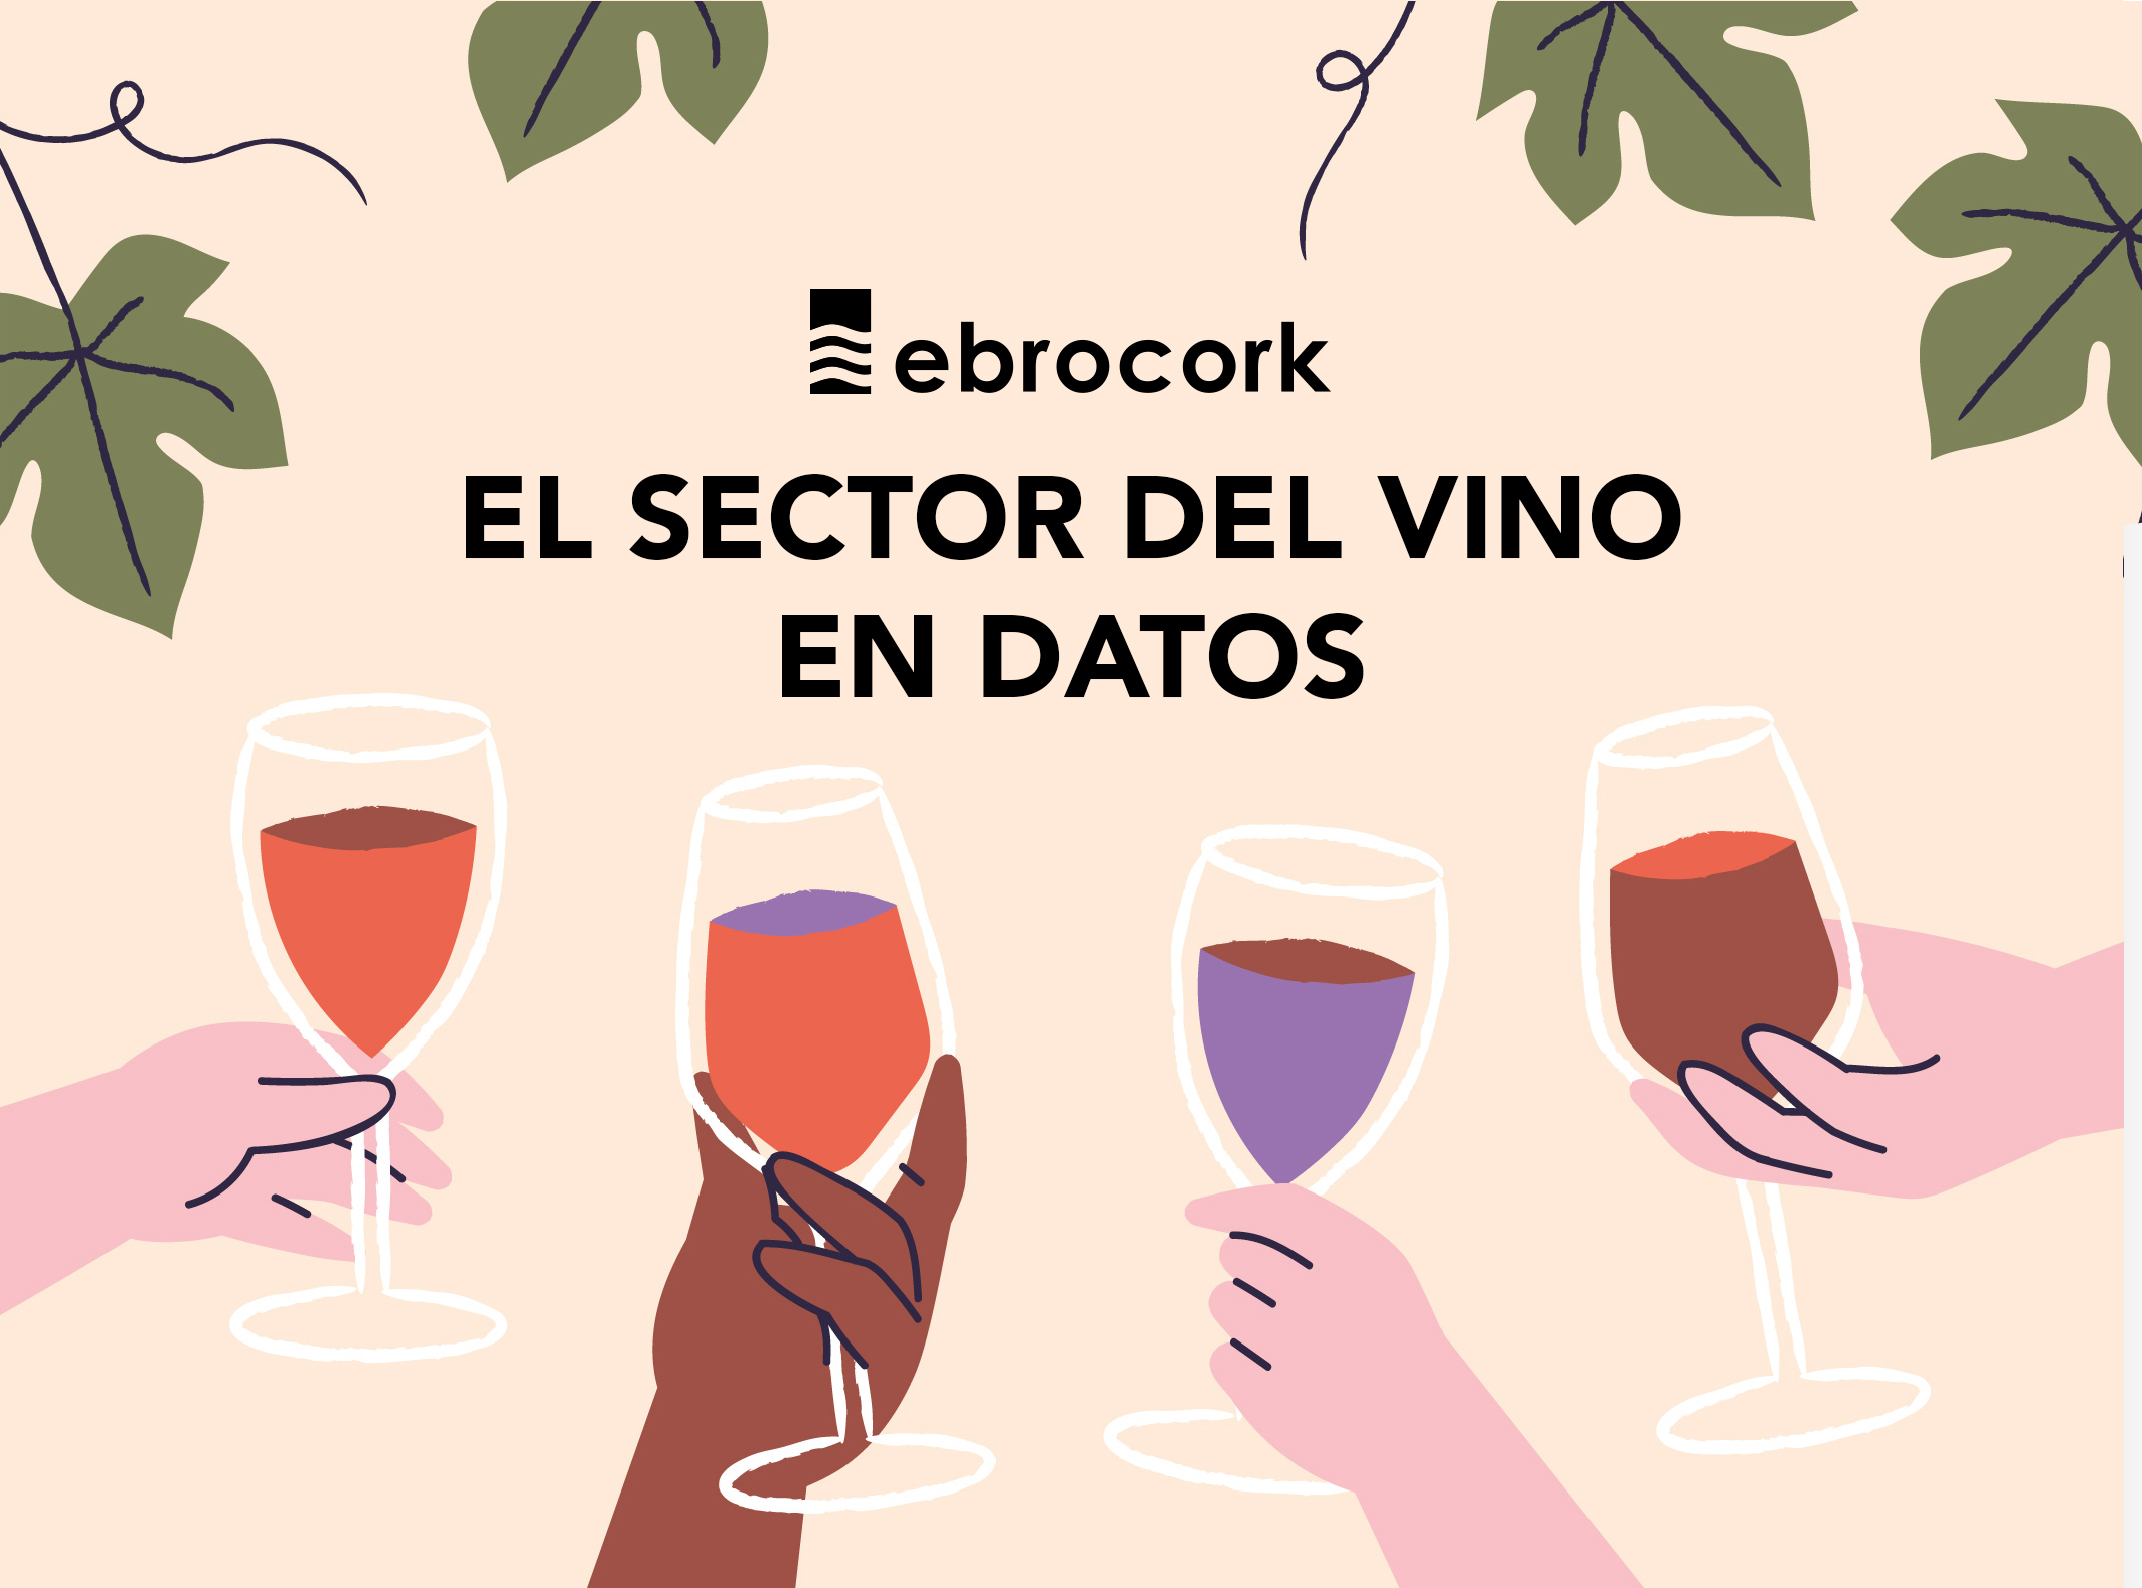 El sector del vino en datos